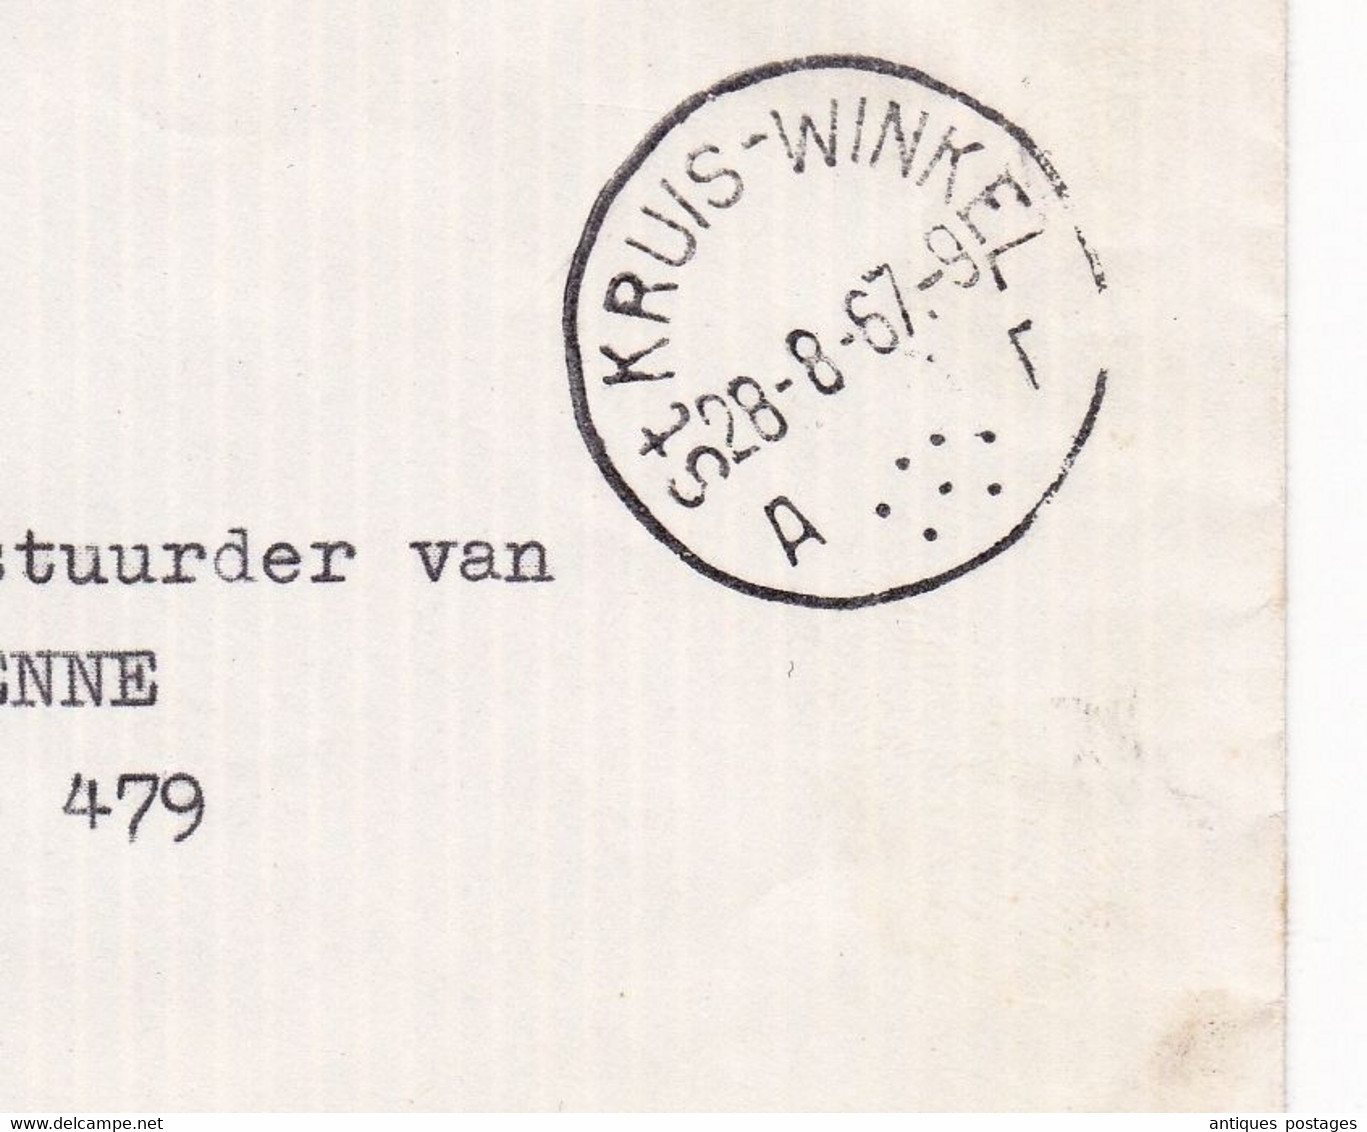 Lettre Sint-Kruis-Winkel 1967 Winkel-Sainte-Croix Waelput Van Acker En Zonen Belgique Brussel Bruxelles - Cartas & Documentos